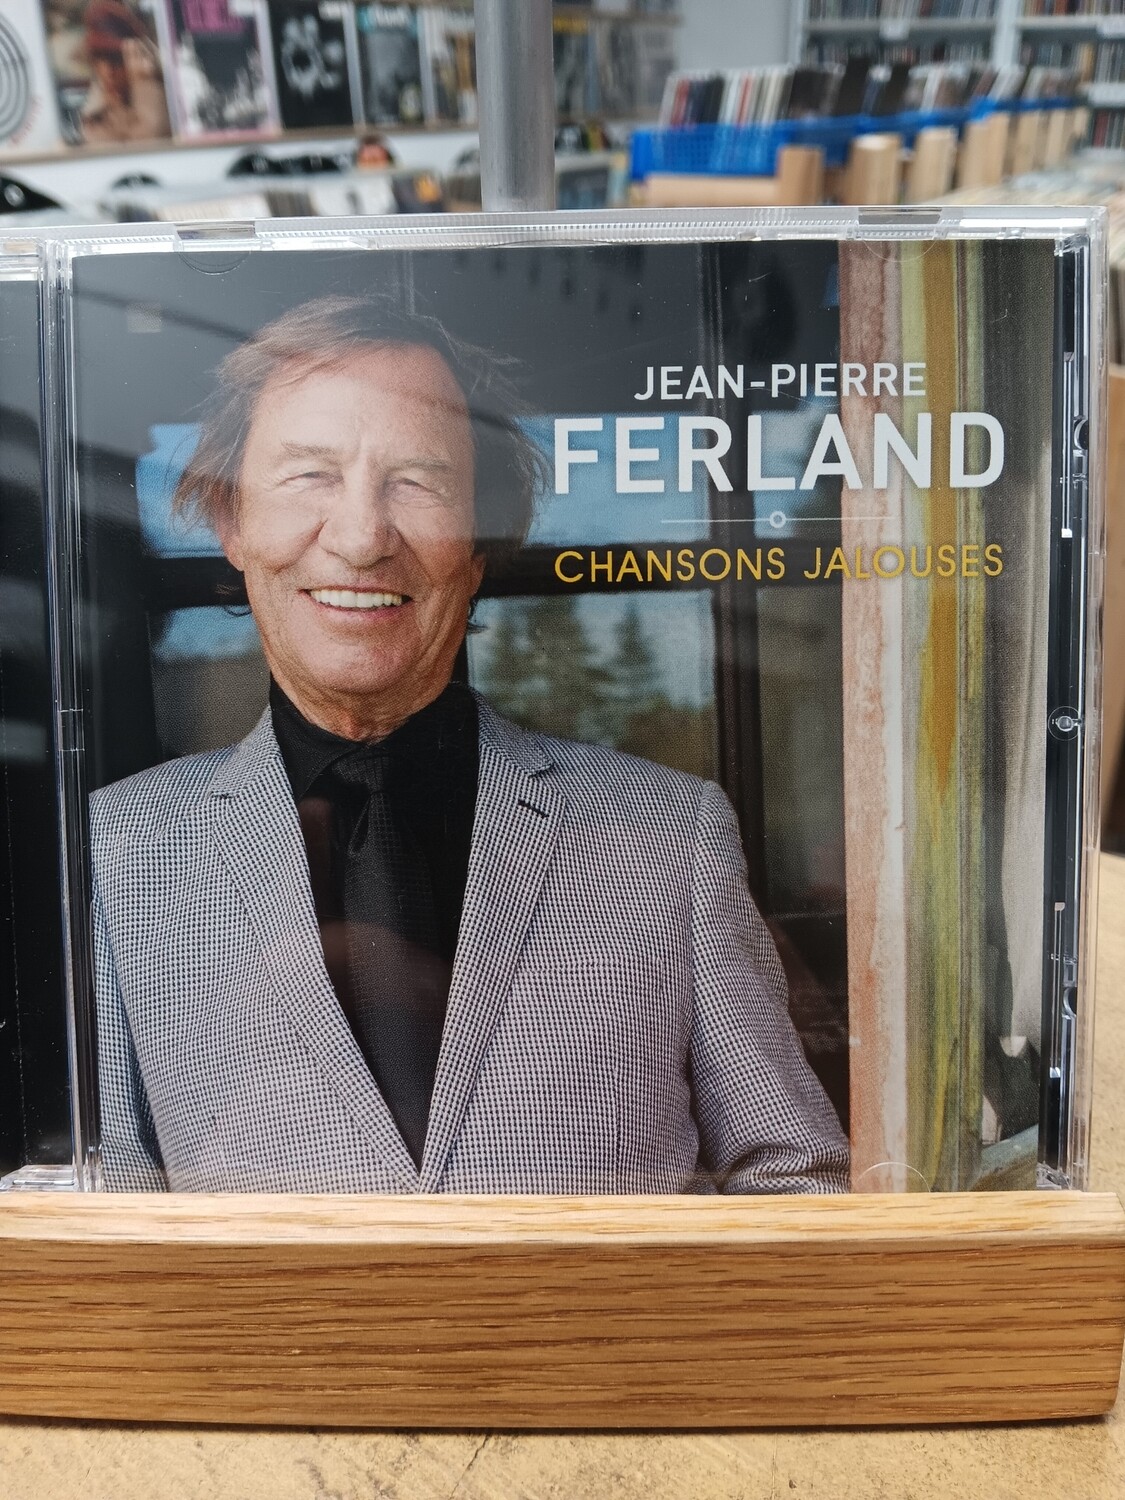 JEAN-PIERRE FERLAND - Chansons jalouses (CD)